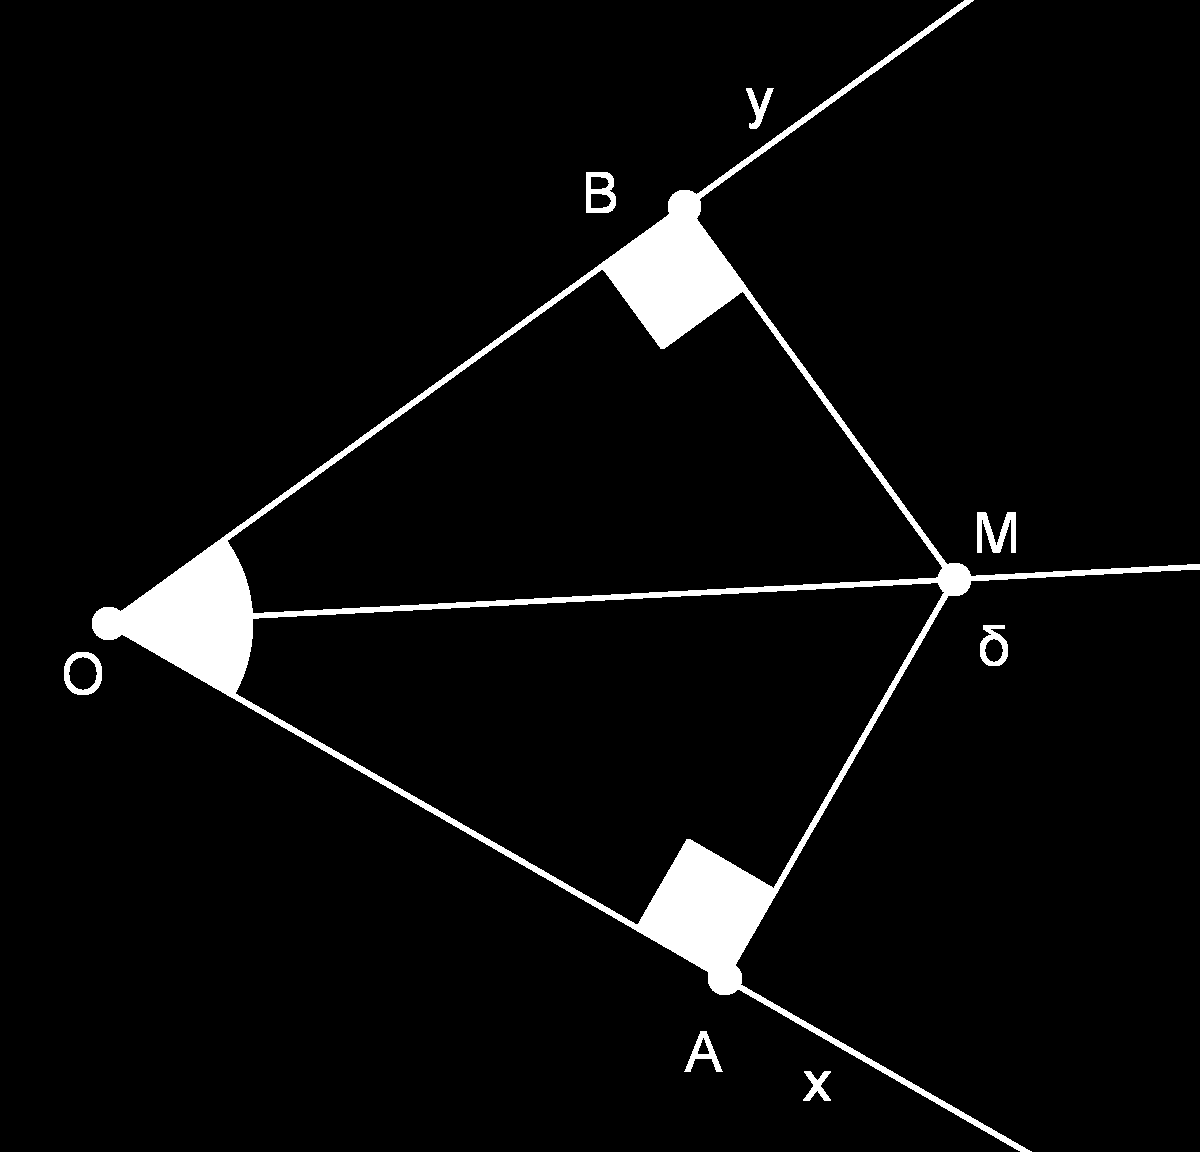 Θεώρημα Κάθε σημείο της διχοτόμου μιας γωνίας ισαπέχει από τις πλευρές της και αντίστροφα κάθε εσωτερικό σημείο της γωνίας που ισαπέχει από τις πλευρές είναι σημείο της διχοτόμου Έστω μια γωνία x Oy